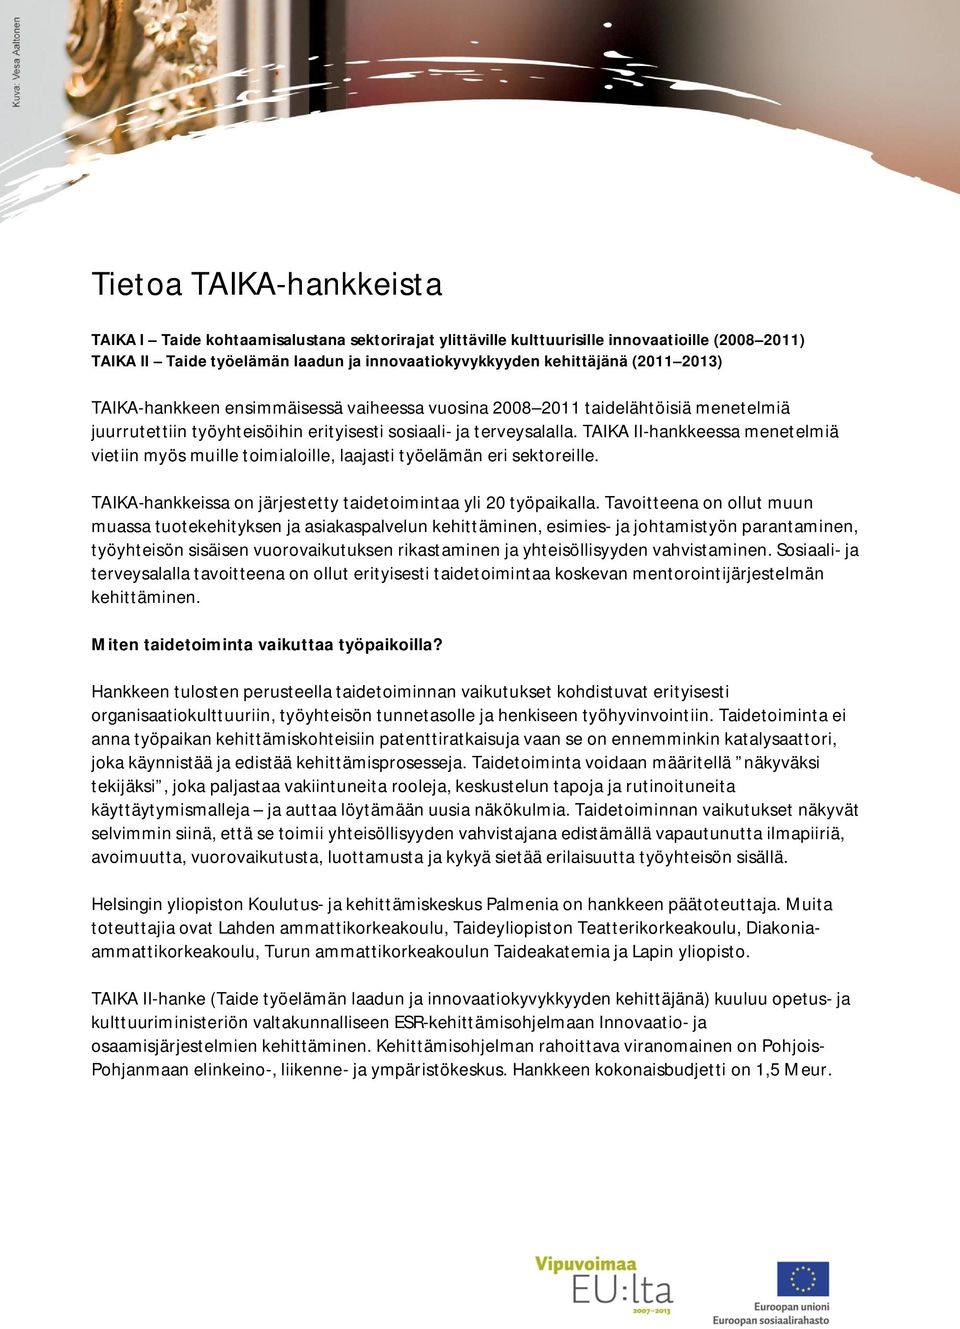 TAIKA II-hankkeessa menetelmiä vietiin myös muille toimialoille, laajasti työelämän eri sektoreille. TAIKA-hankkeissa on järjestetty taidetoimintaa yli 20 työpaikalla.